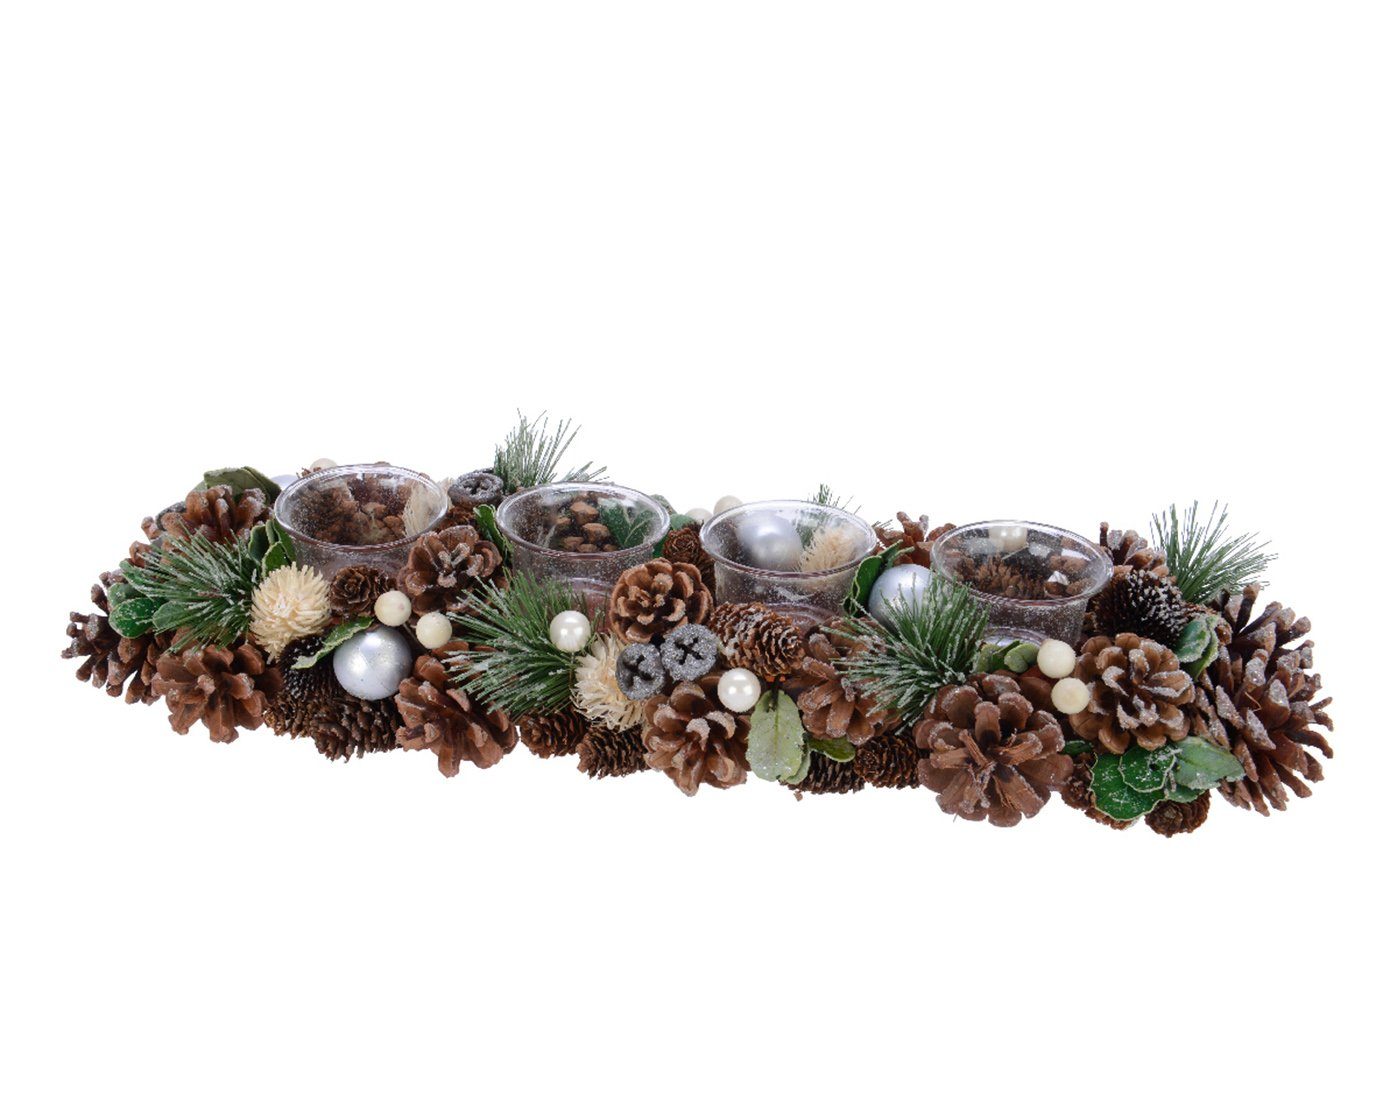 Decoris season decorations Teelichthalter, Adventsgesteck aus Zapfen länglich mit Teelichter 45cm braun / grün